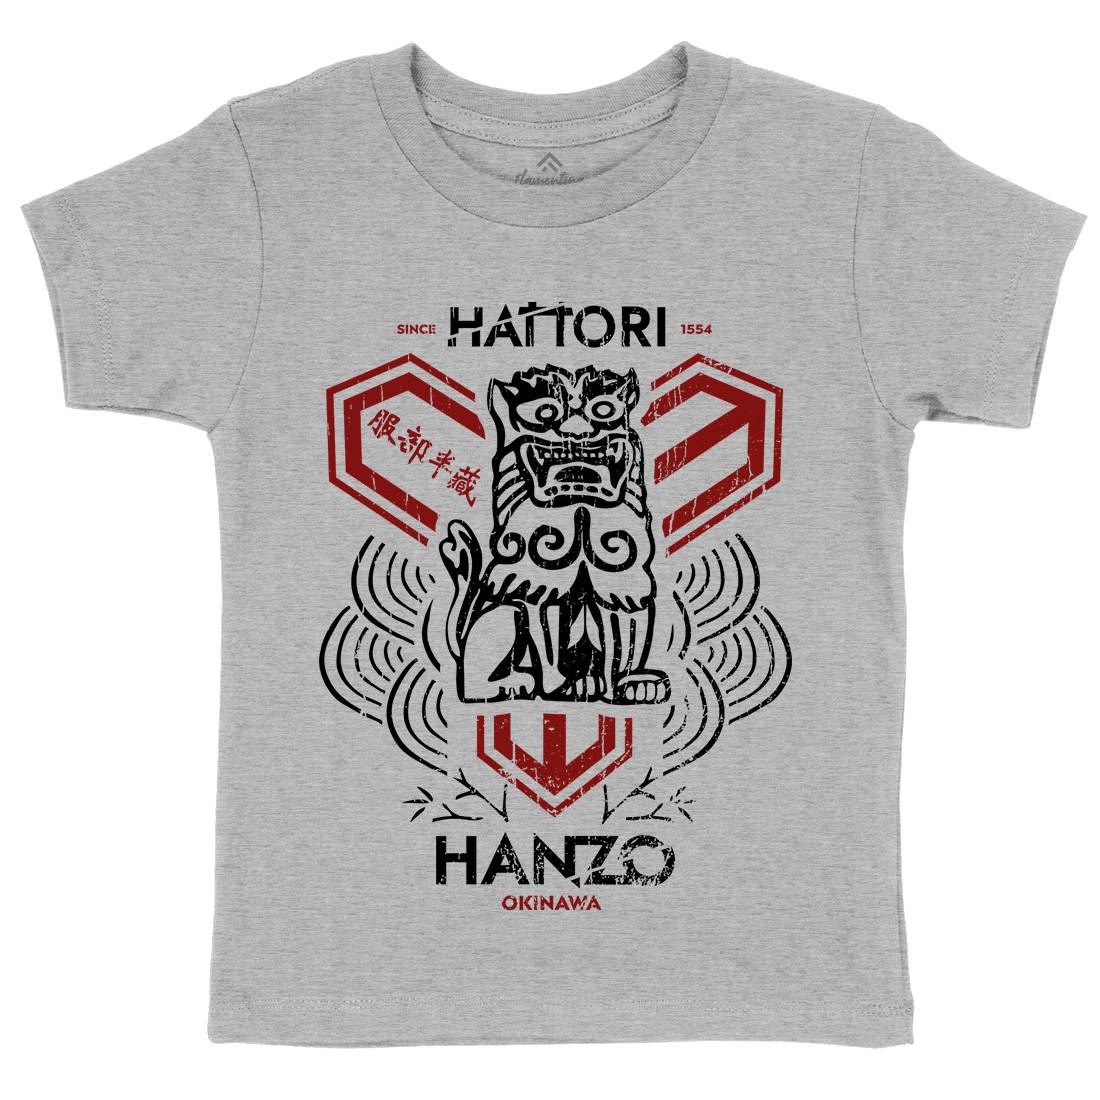 Hattori Hanzo Kids Crew Neck T-Shirt Asian D437